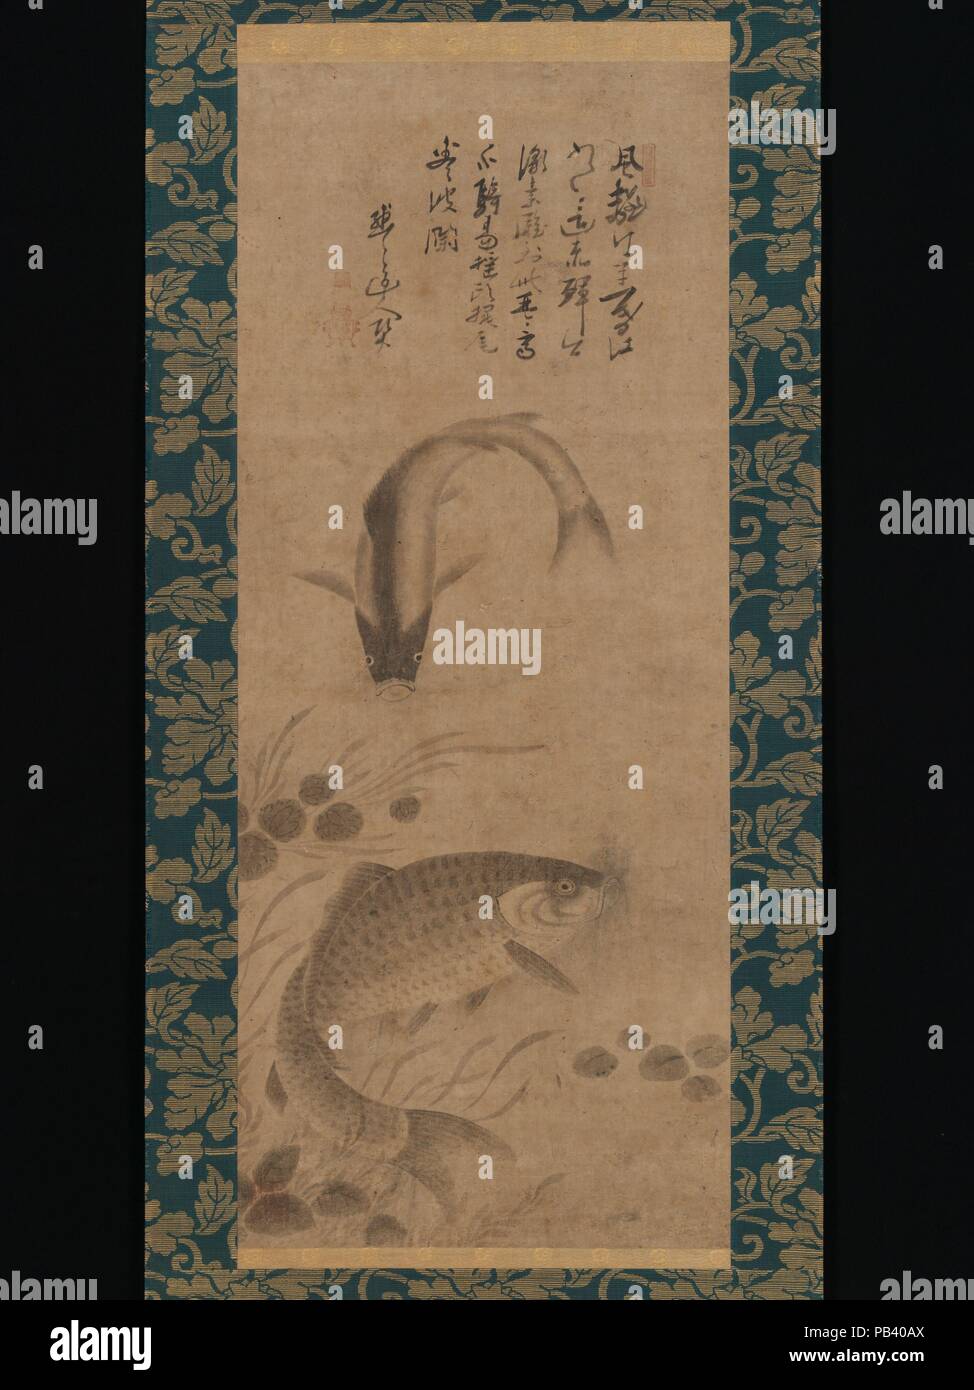 La carpa e waterweeds. Artista: Yogetsu (giapponese, attivo tardo XV secolo); inscritta da Mokumoku Dojin (giapponese, attivo tardo XV secolo). Cultura: il Giappone. Dimensioni: Immagine: 33 7/16 × 13 7/8 in. (85 × 35,2 cm) complessivamente con il montaggio: 65 3/4 × 19 1/16 in. (167 × 48,4 cm) in generale con le manopole: 65 3/4 × 20 7/8 in. (167 × 53 cm). Data: tardo XV secolo. Poco è noto circa Yogetsu, che era attivo come un monaco nelle montagne a nord-est della antica capitale di Nara. Egli è talvolta citato come un seguace del maestro pittore Sesshu sicuramente Toyo (1420-1506). Al di sopra del Yogetsu immagine di buon auspicio di una coppia di f Foto Stock